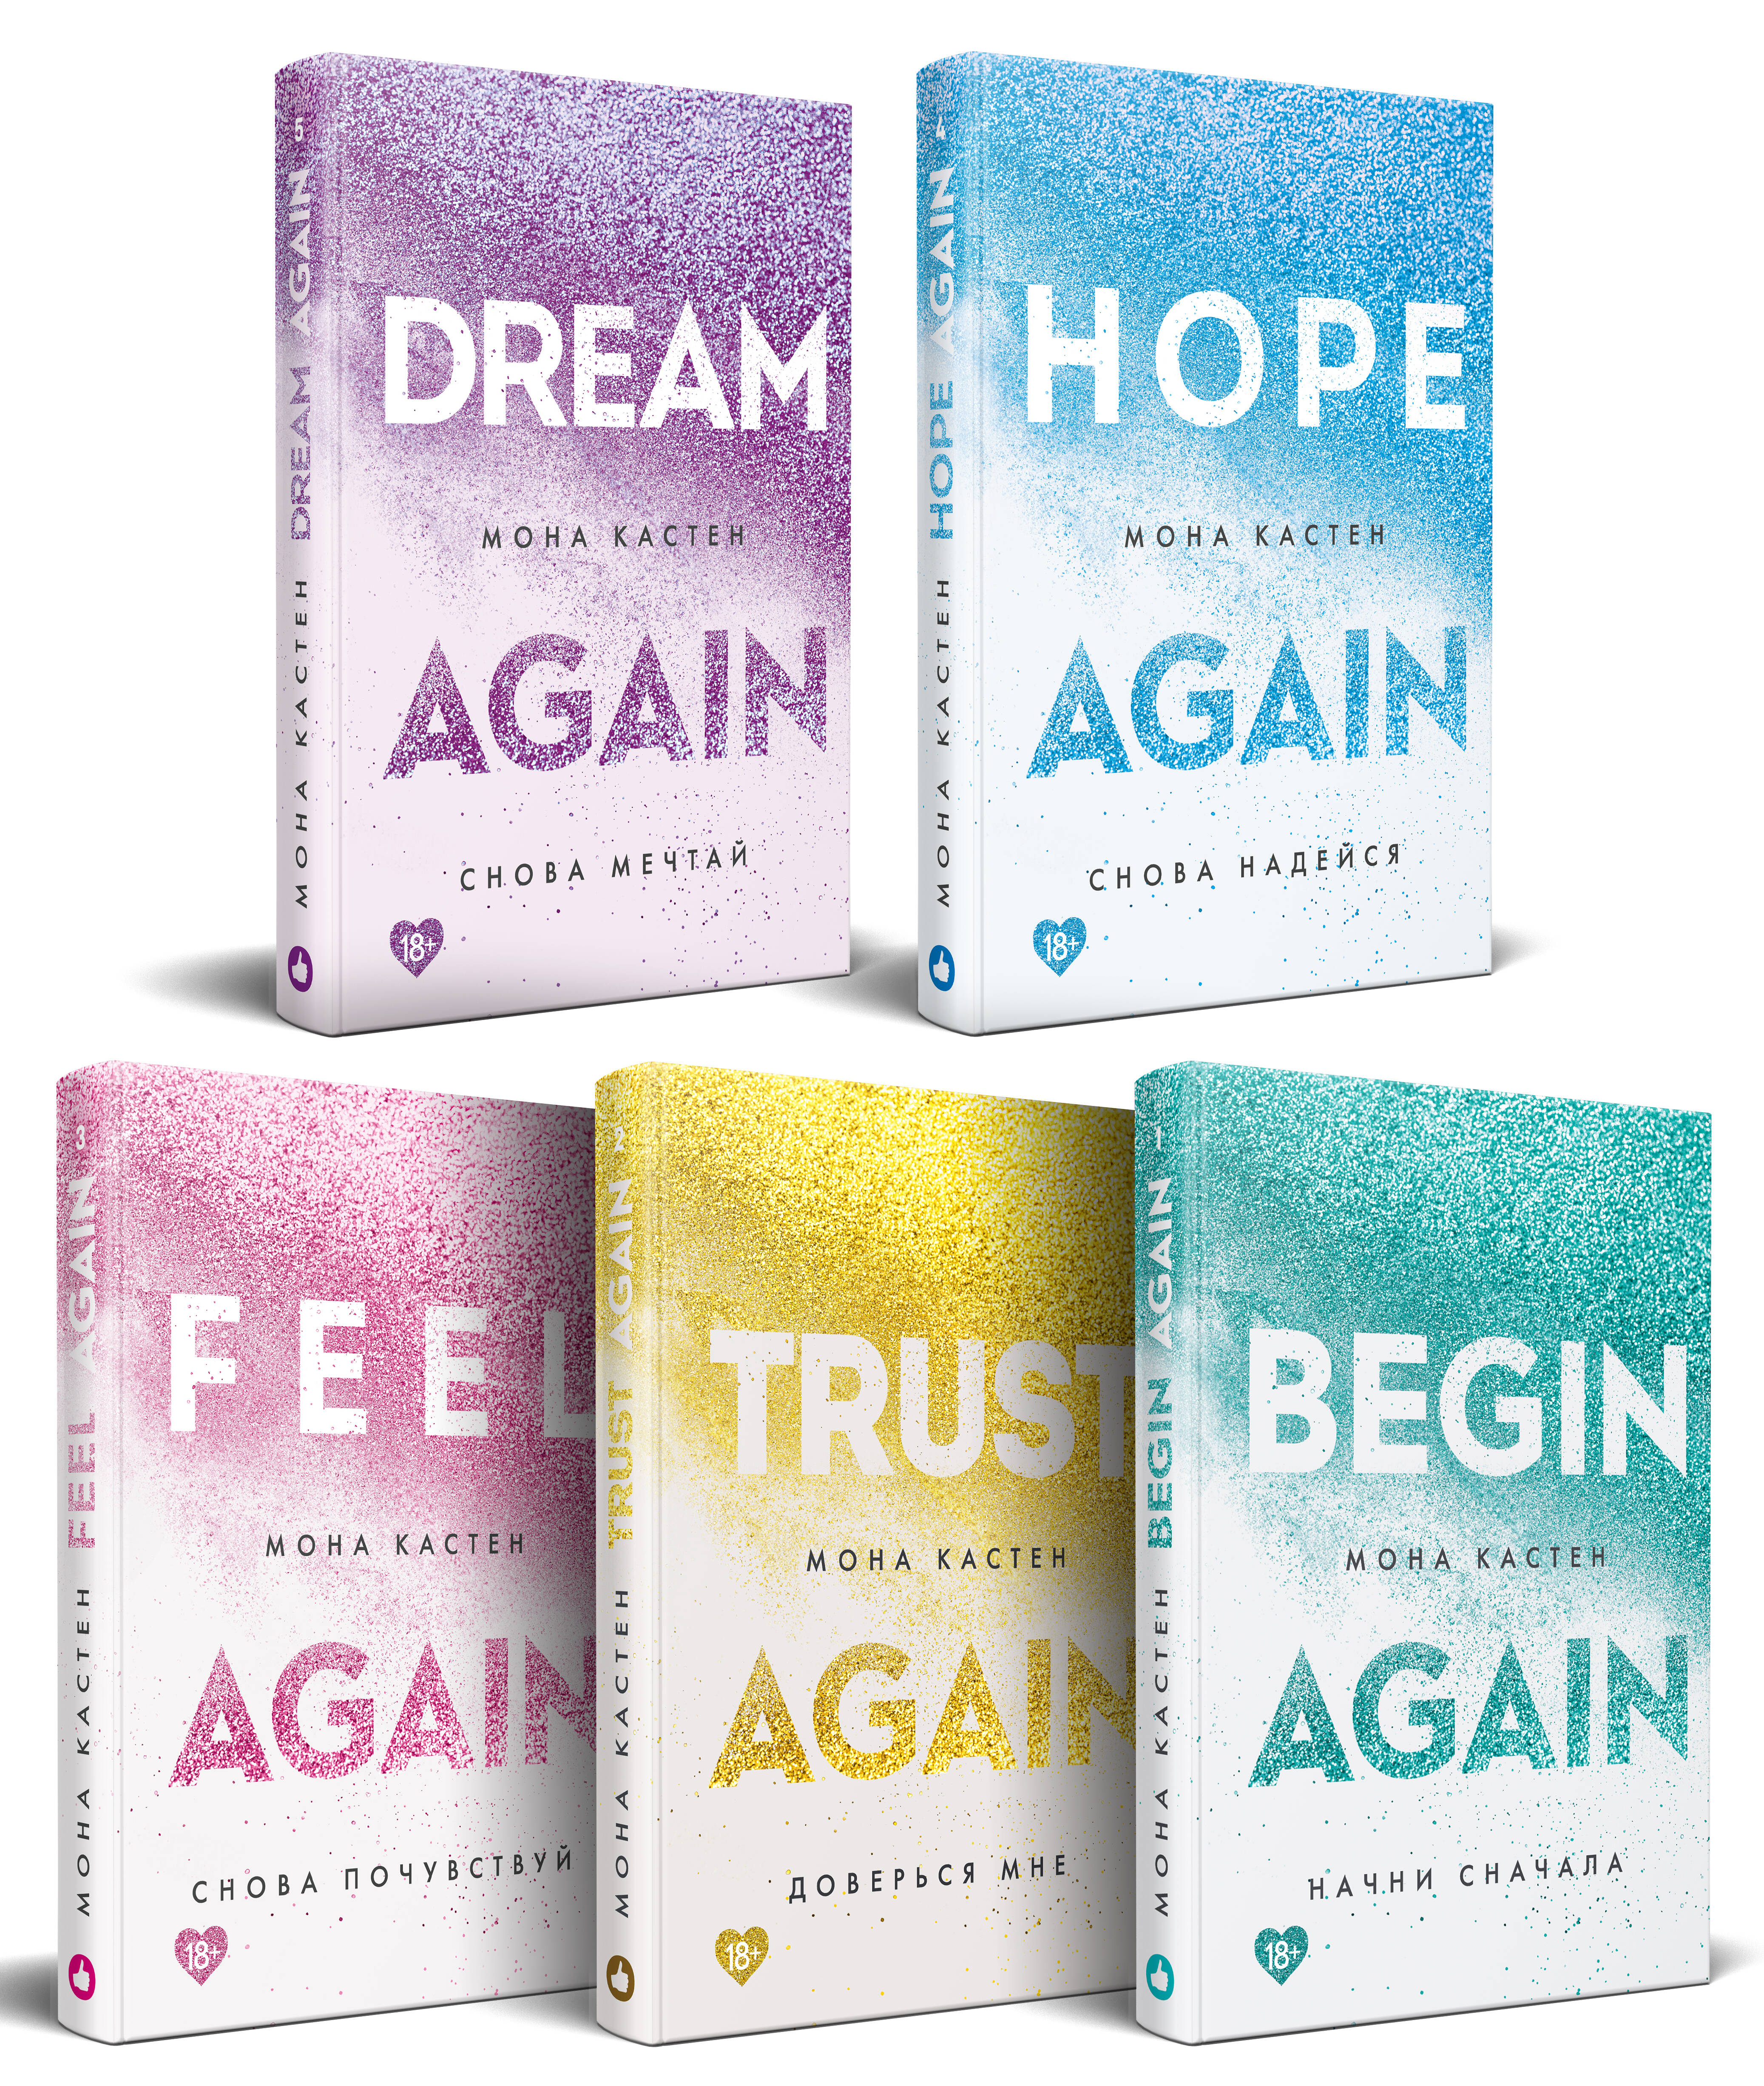 Комплект "Абсолютный бестселлер Моны Кастен" из 5 книг: Начни сначала + Доверься мне + Снова почувствуй + Снова надейся + Снова мечтай